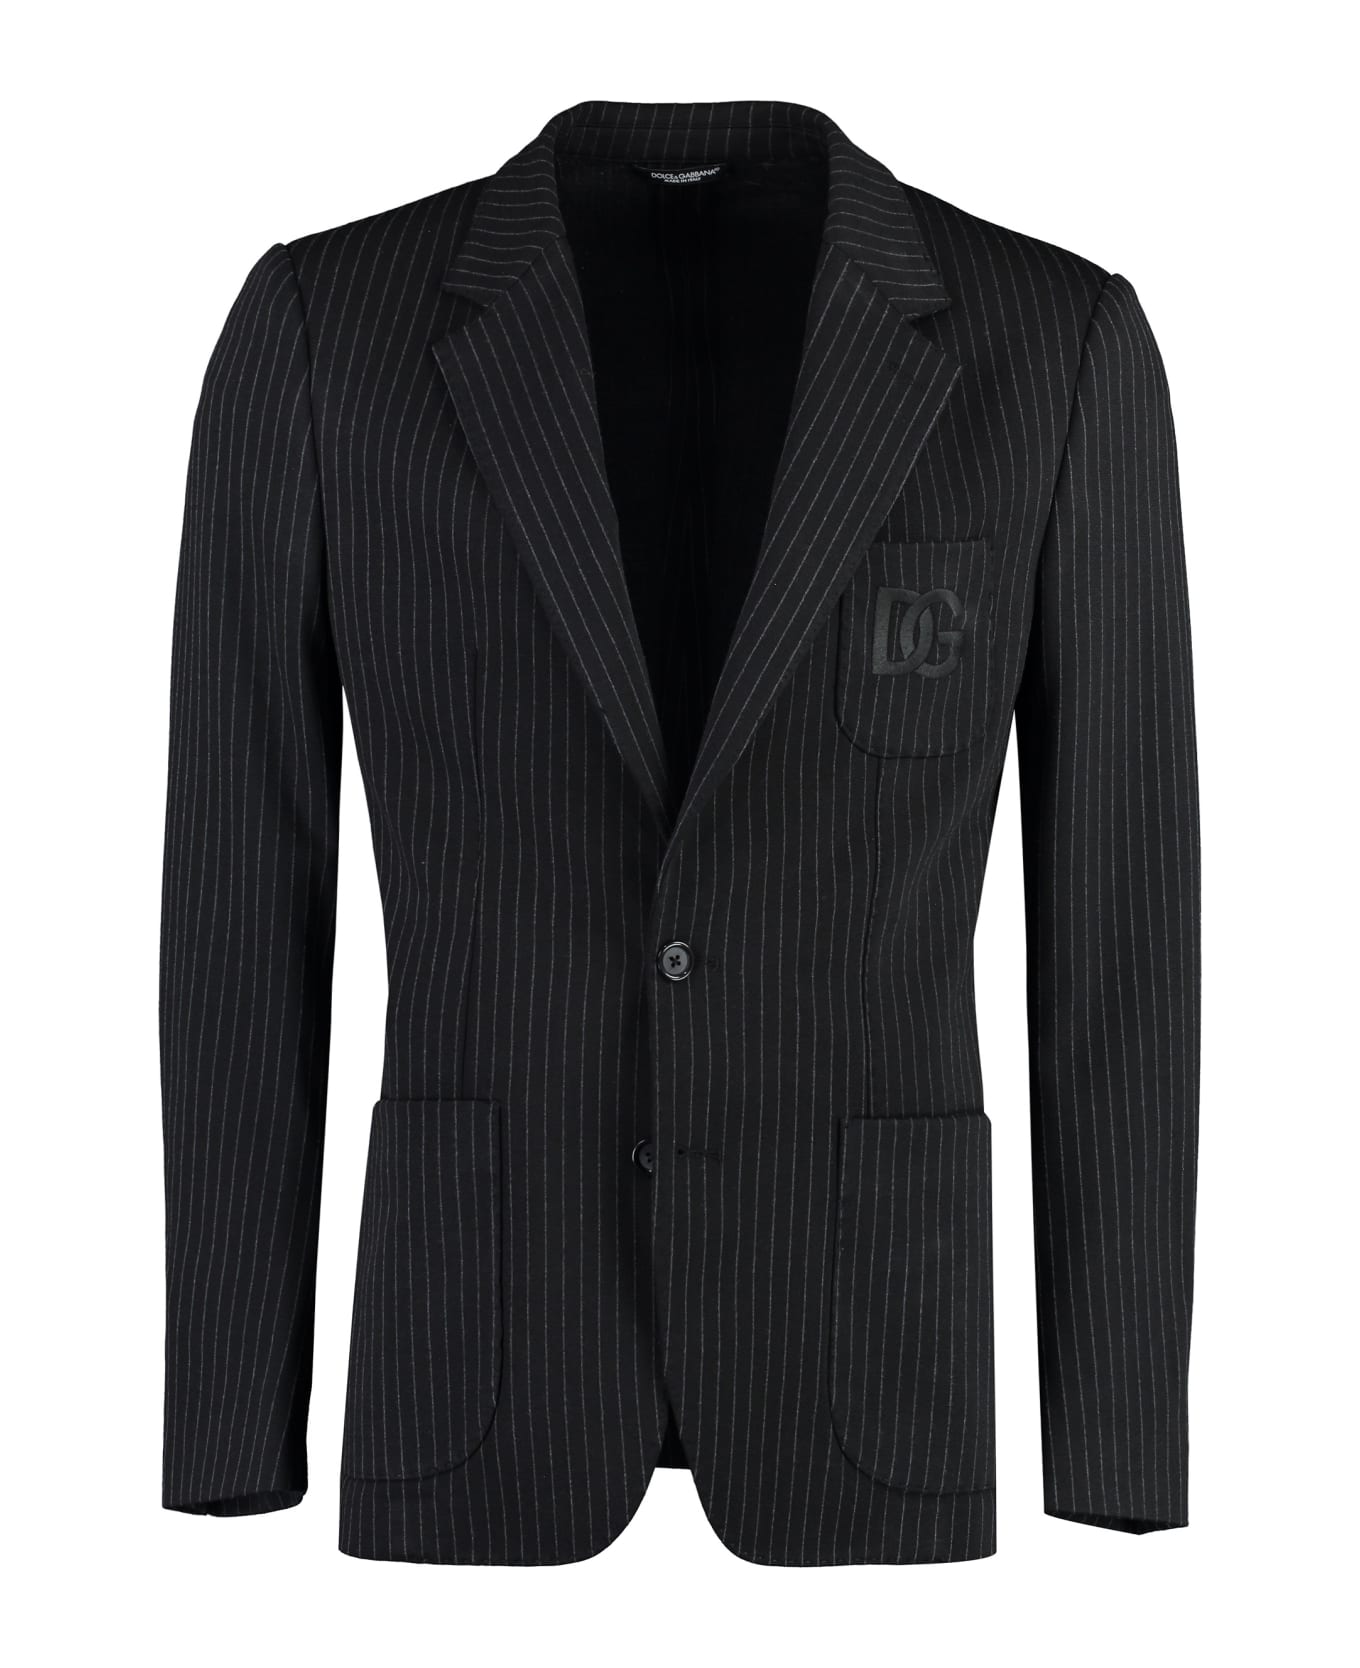 Dolce & Gabbana Portofino Single-breasted Two-button Jacket - black ブレザー